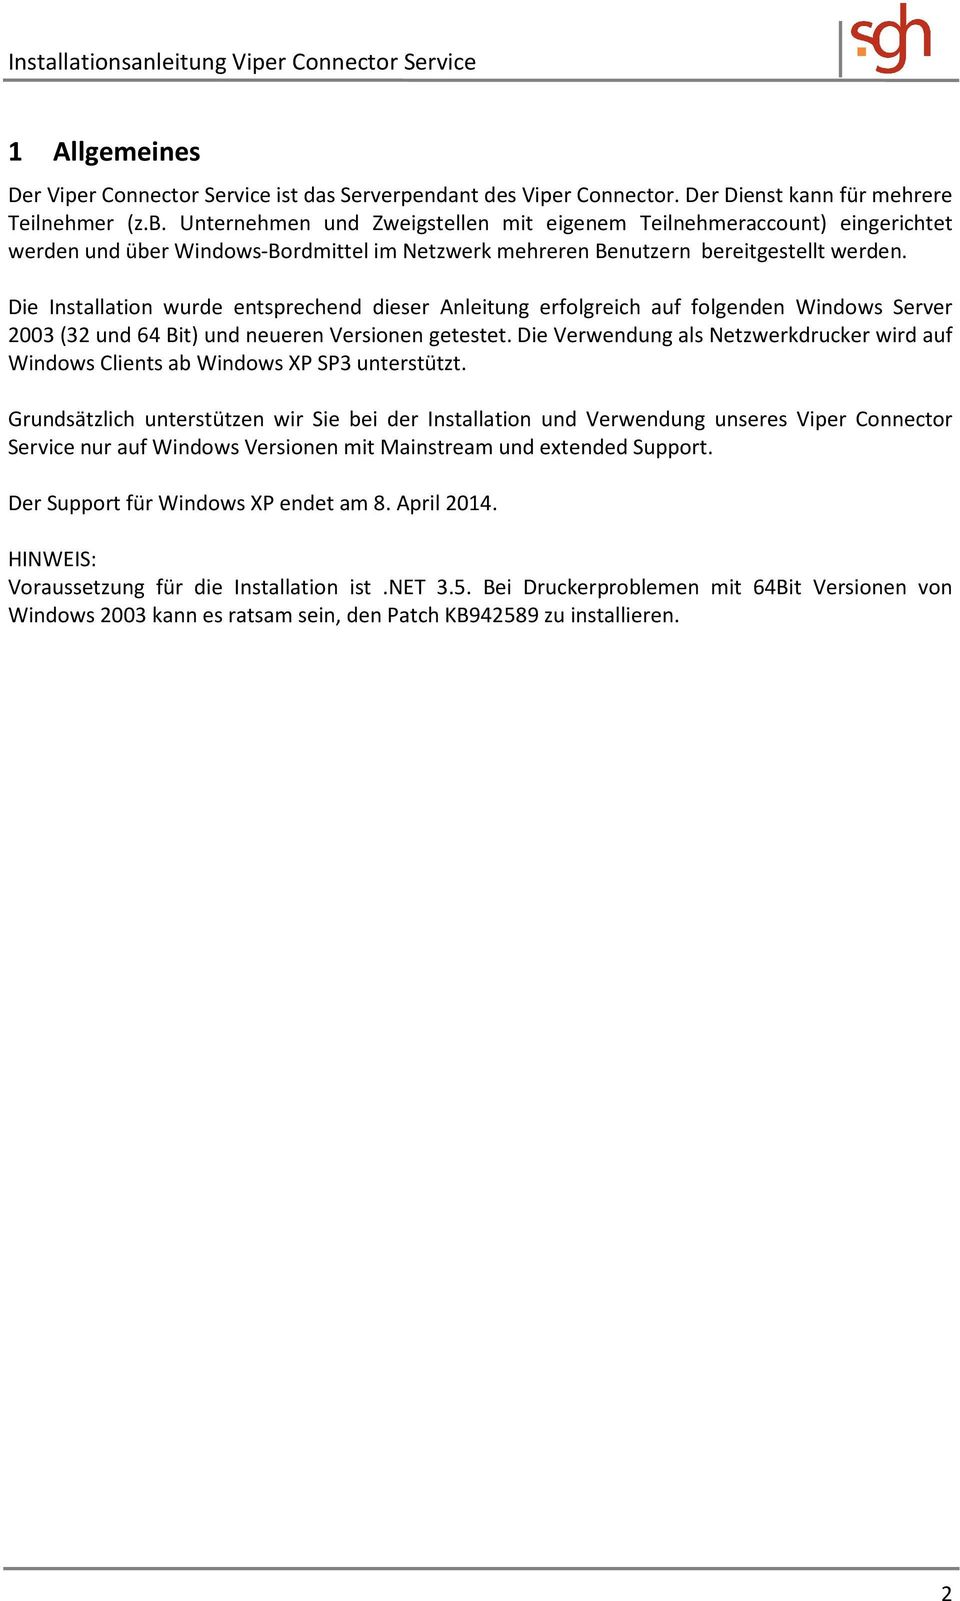 Die Installation wurde entsprechend dieser Anleitung erfolgreich auf folgenden Windows Server 2003 (32 und 64 Bit) und neueren Versionen getestet.